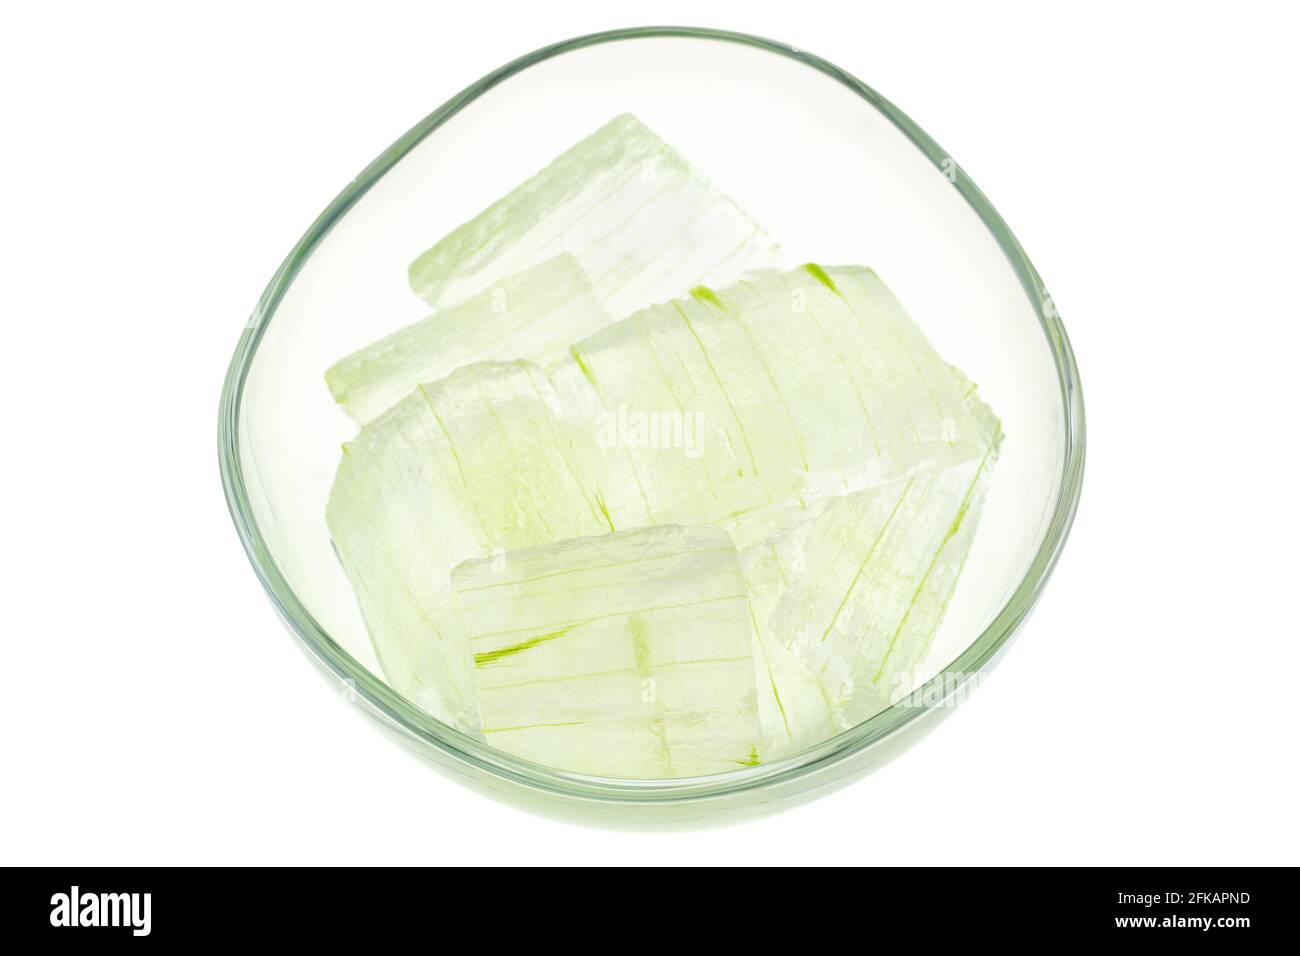 Eine Glasschüssel voll frisch gepflückter Aloe Vera Pflanze, geschält und in weiß isolierte Stücke geschnitten. Frische Aloe Vera ist ein natürliches Mittel gegen Sonnenbrand Relie Stockfoto